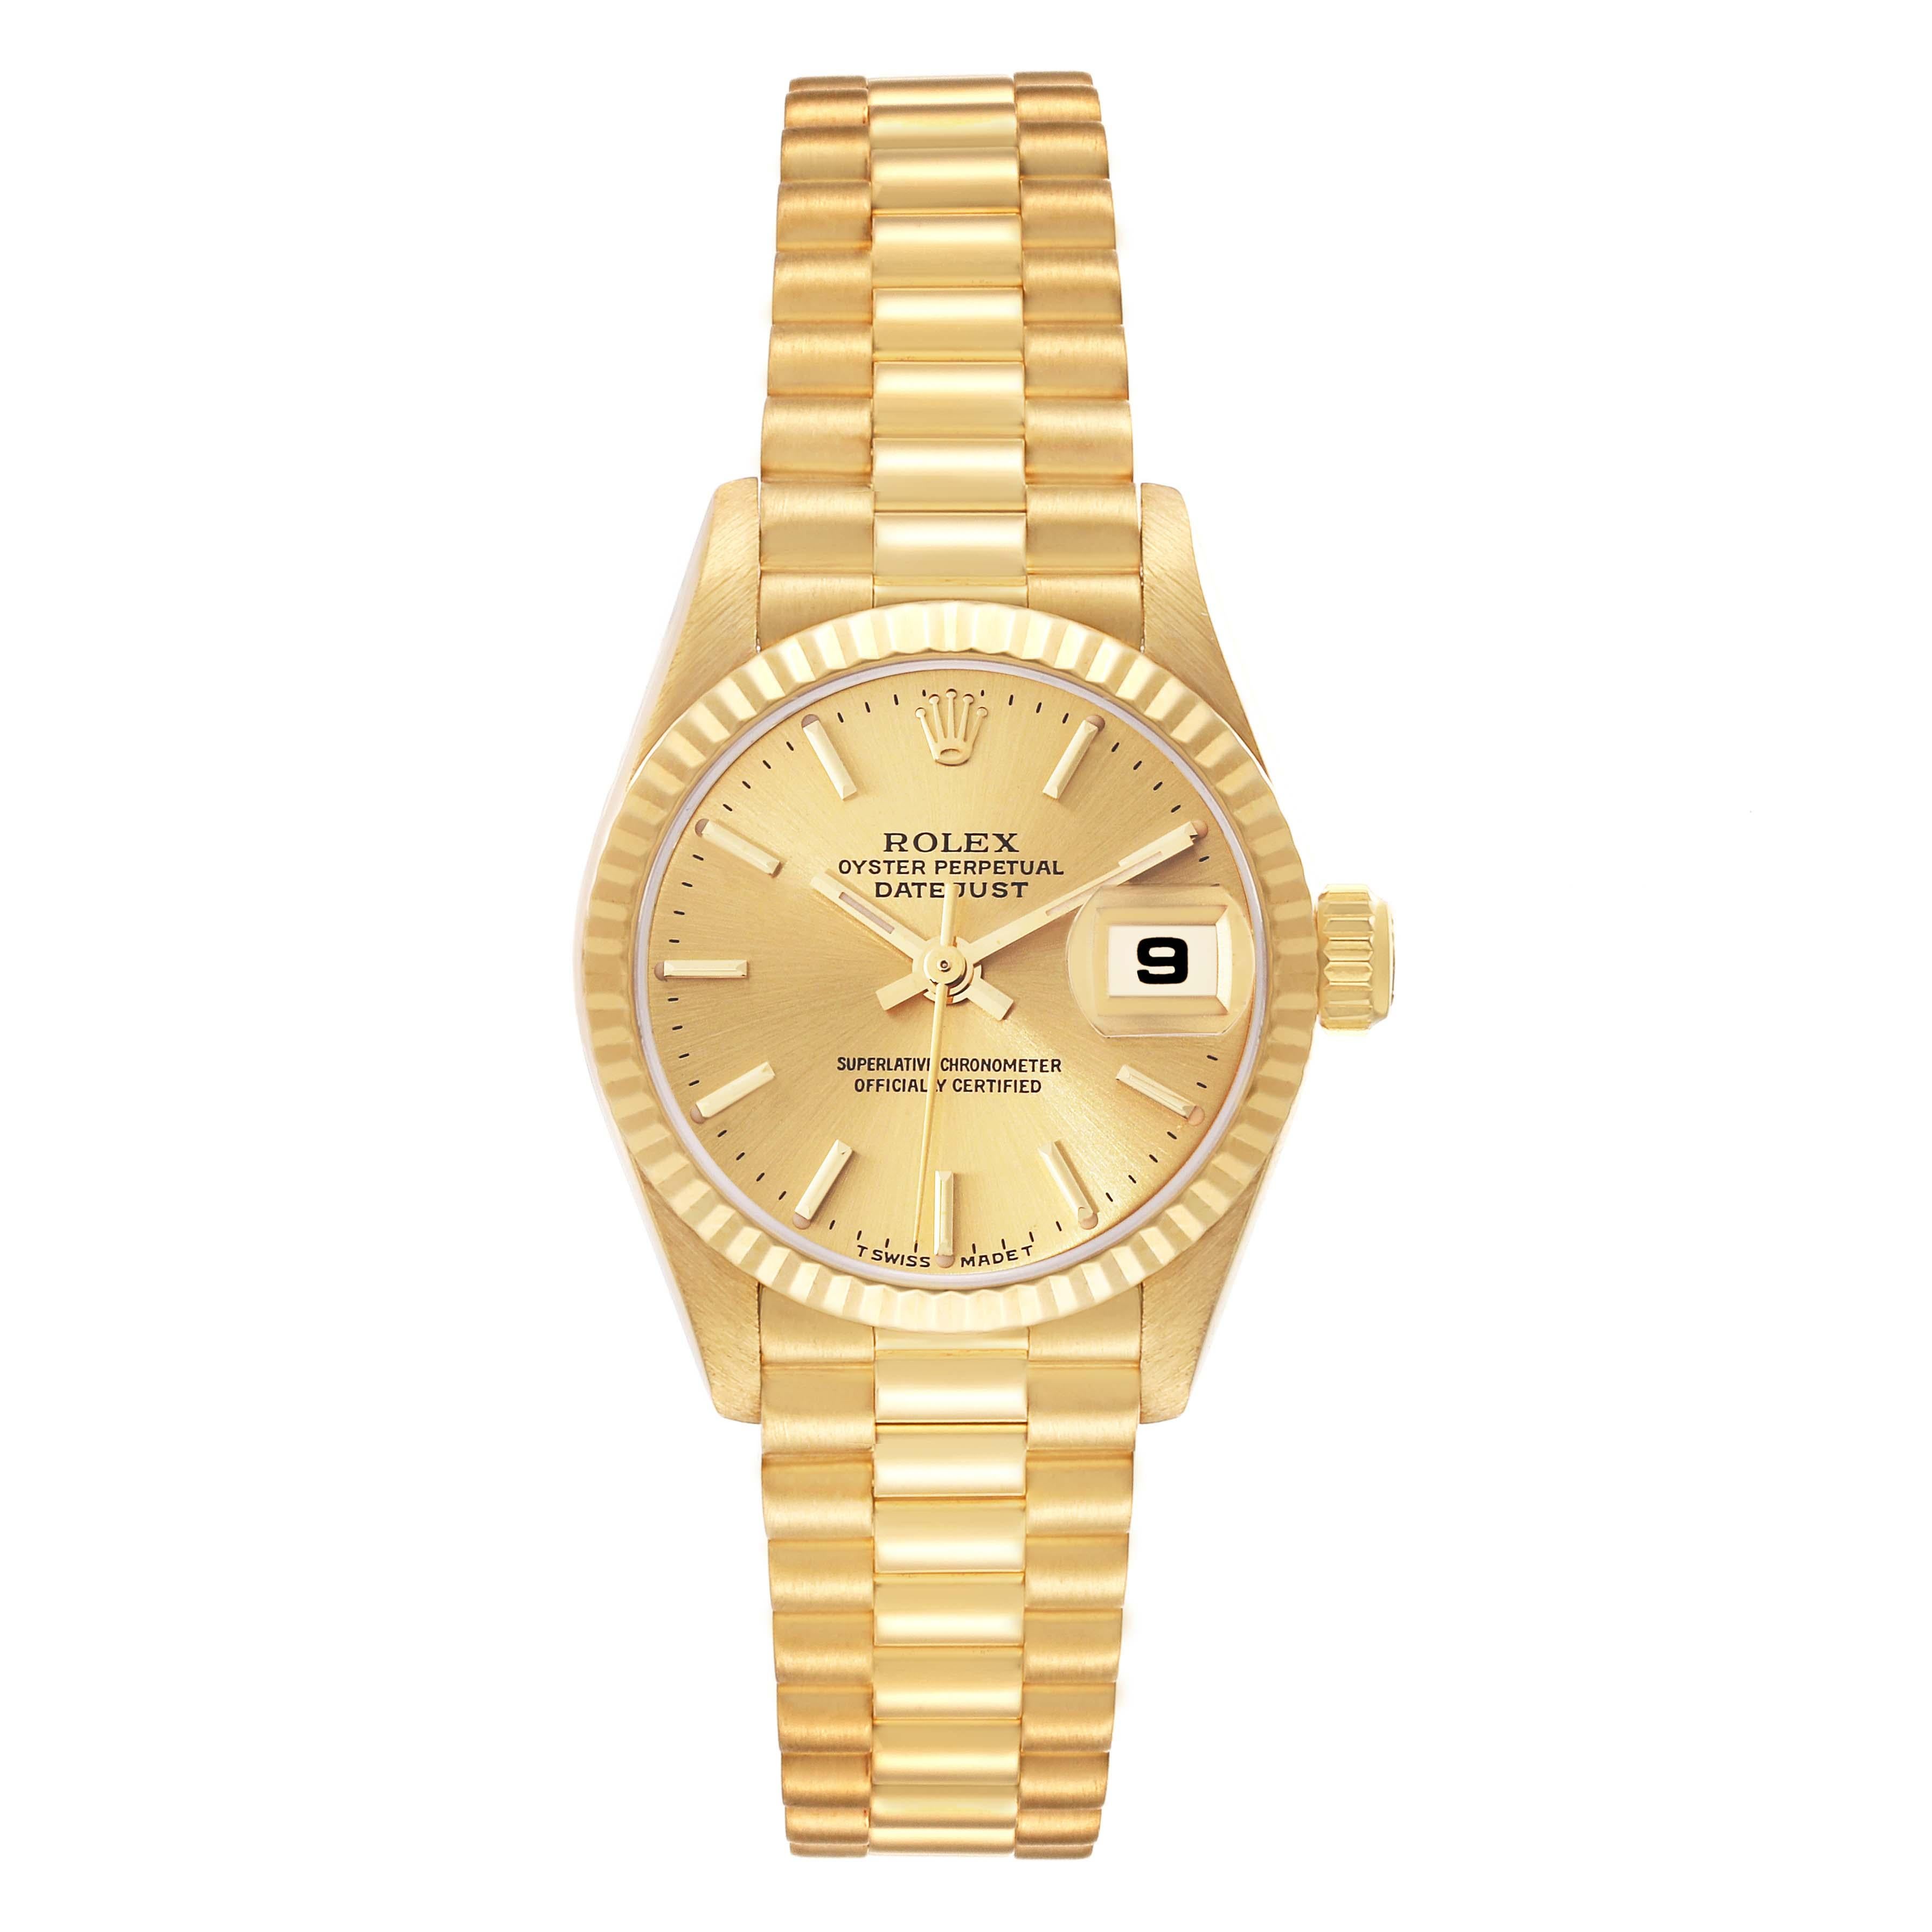 Rolex President Datejust 26mm 18k Yellow Gold Ladies Watch 79178. Mouvement à remontage automatique, certifié chronomètre, avec fonction quickset pour la date. Boîtier en or jaune 18 carats de 26 mm de diamètre. Logo Rolex sur une couronne. Lunette